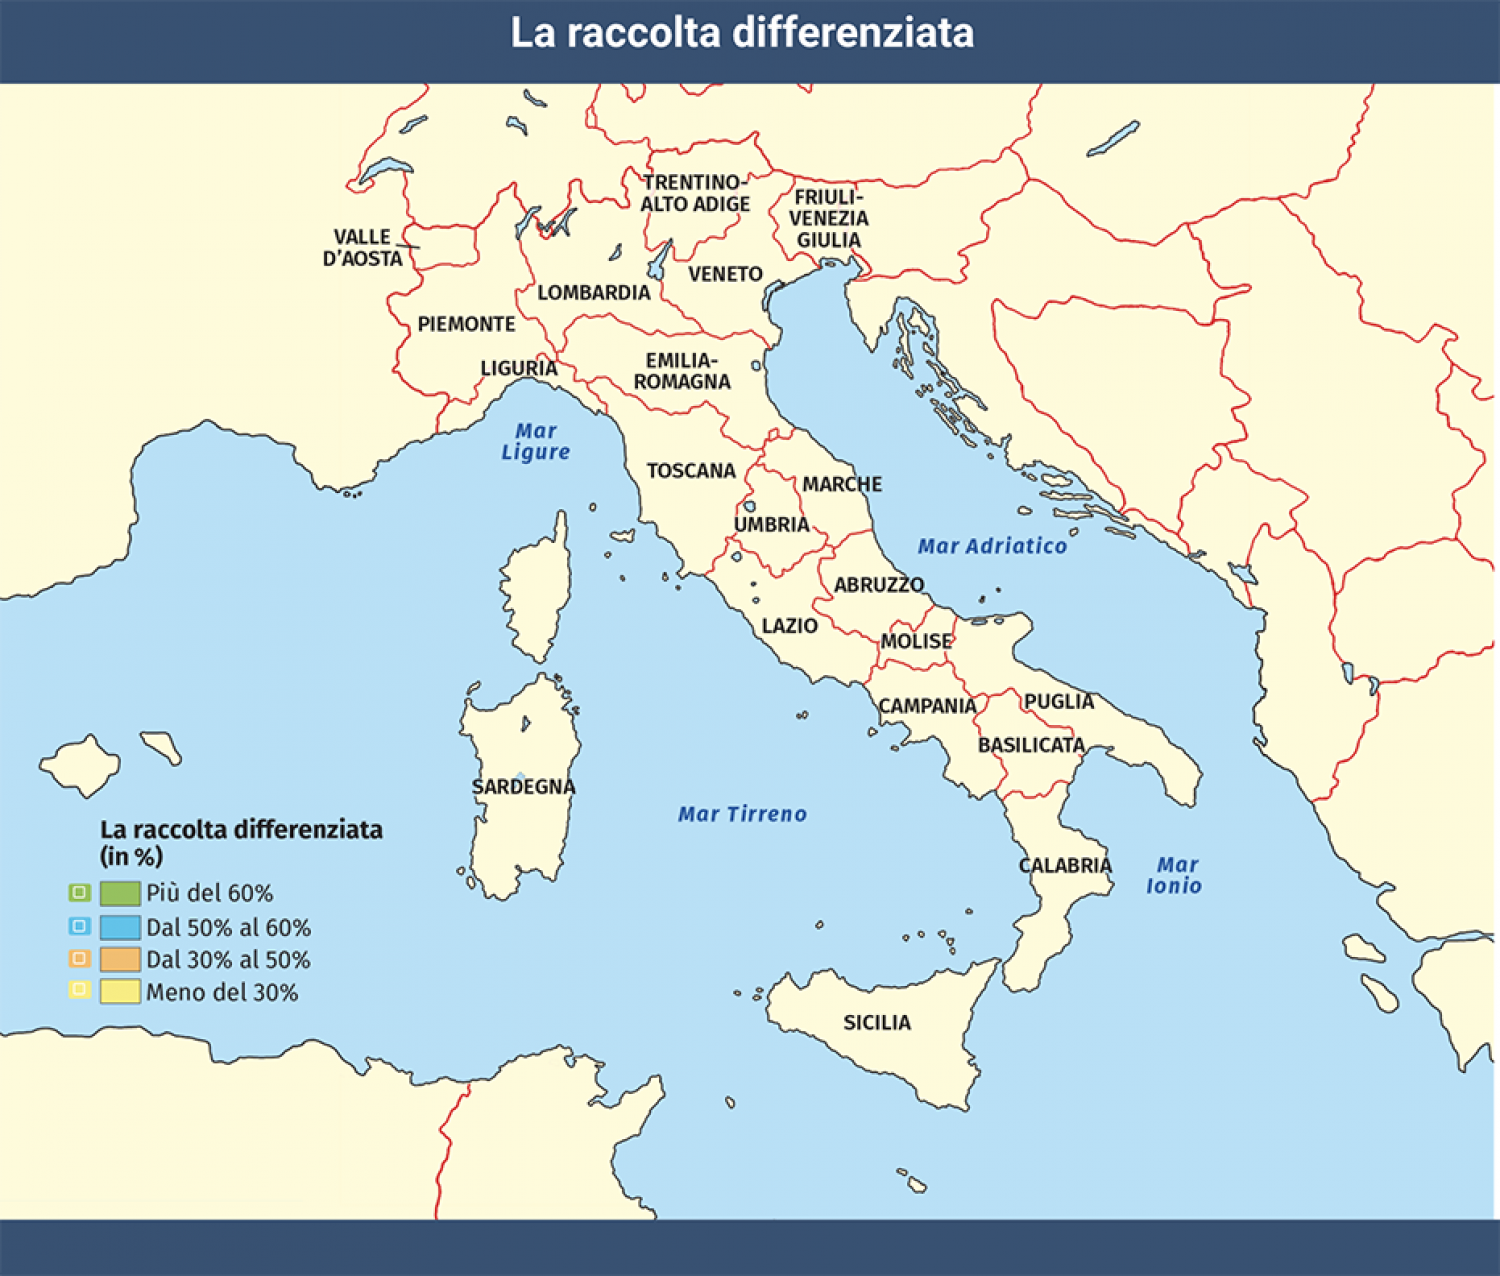 La raccolta differenziata in Italia